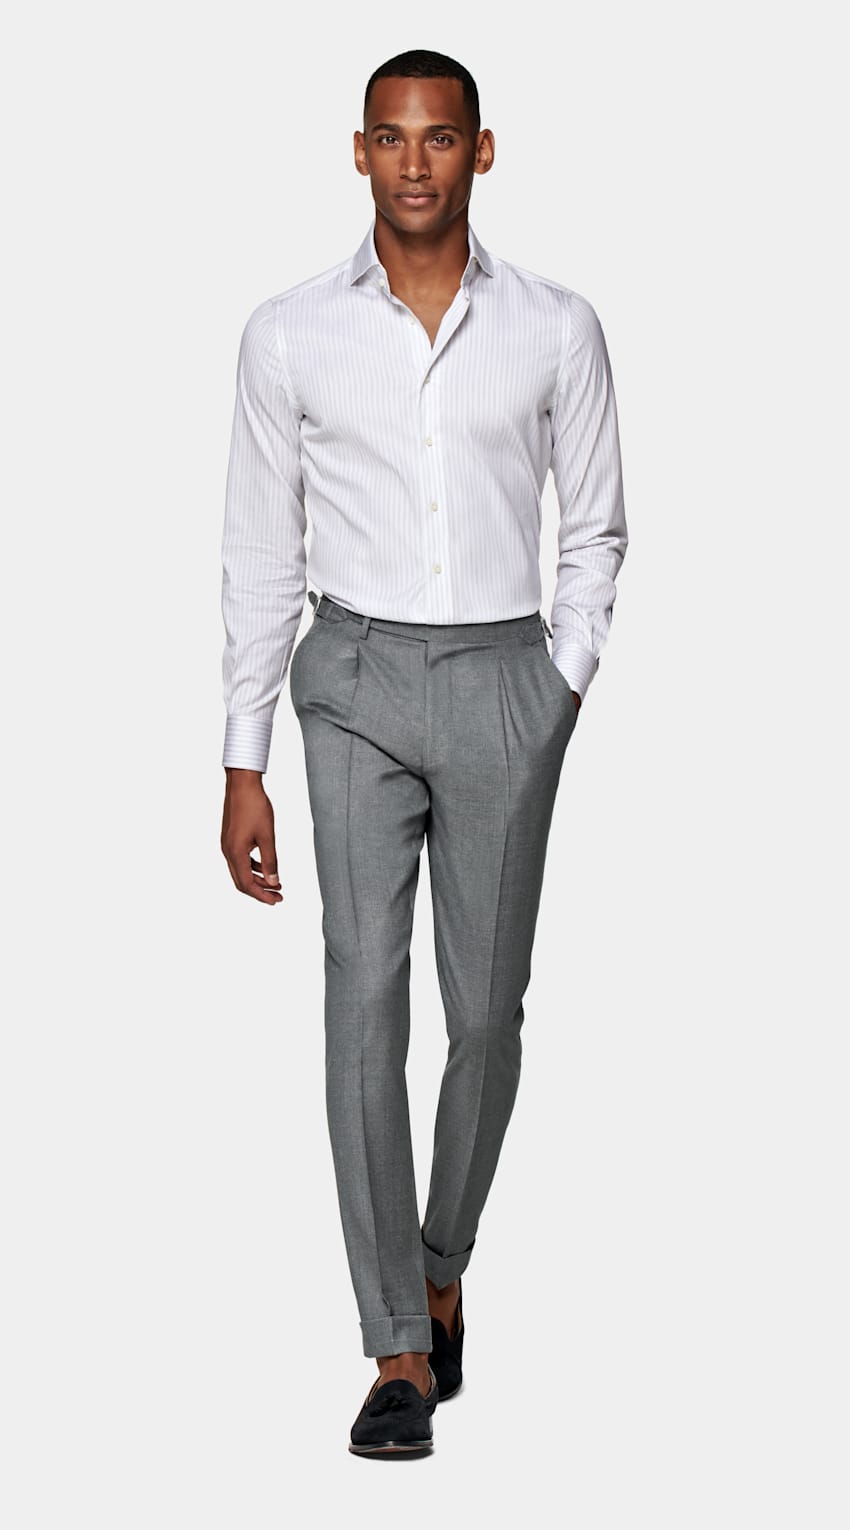 SUITSUPPLY Algodón y Tencel de Albini, Italia Camisa de sarga corte Extra Slim gris claro a rayas